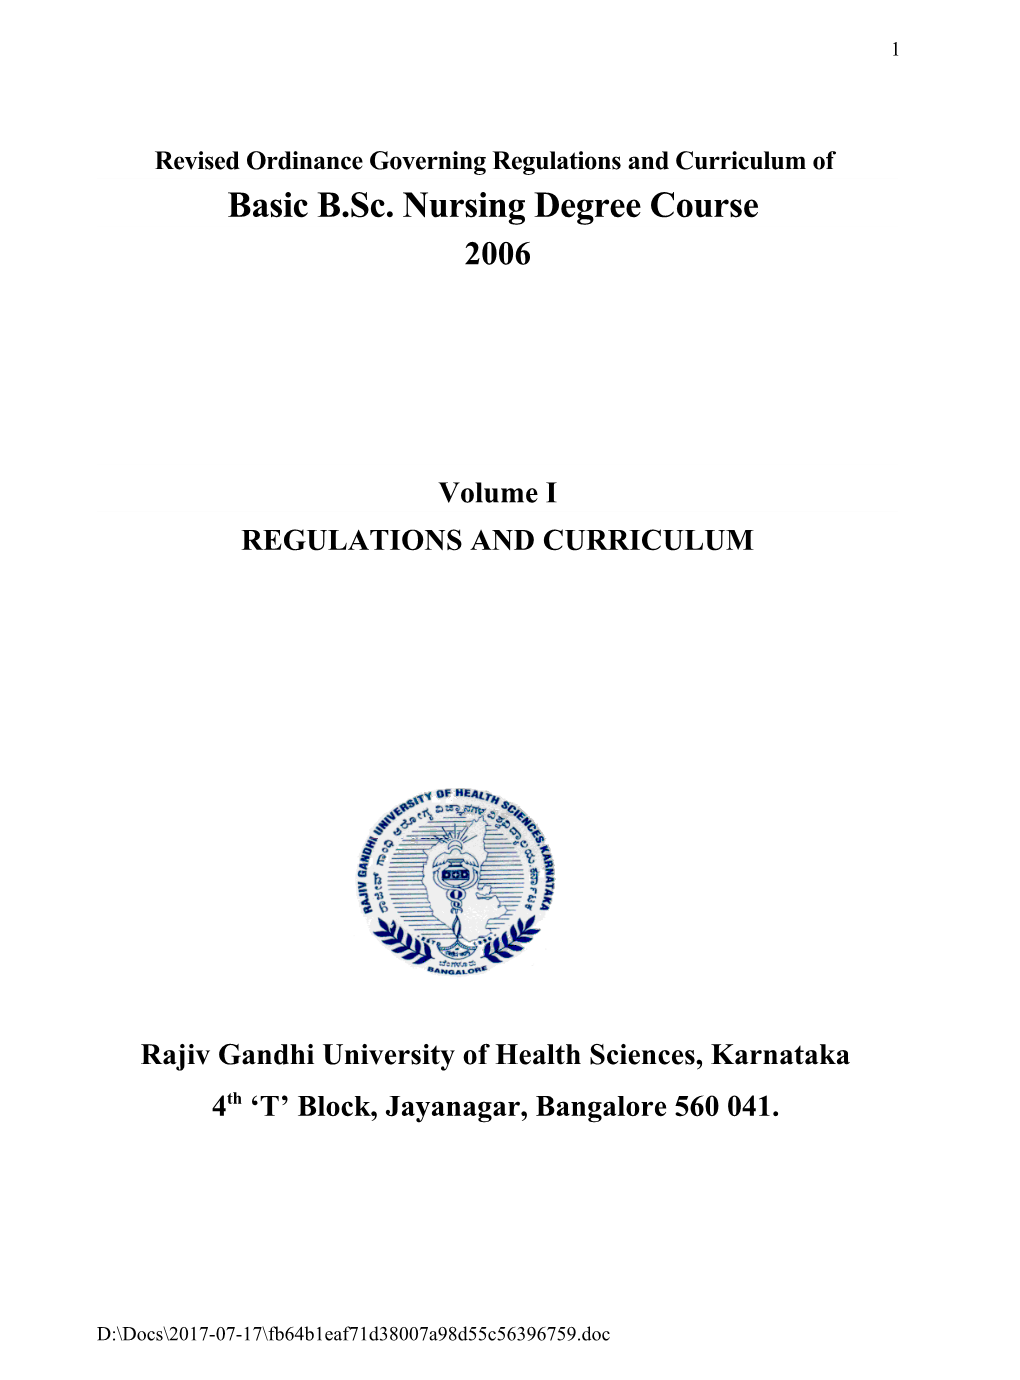 Revised Ordinance Governing Basic B